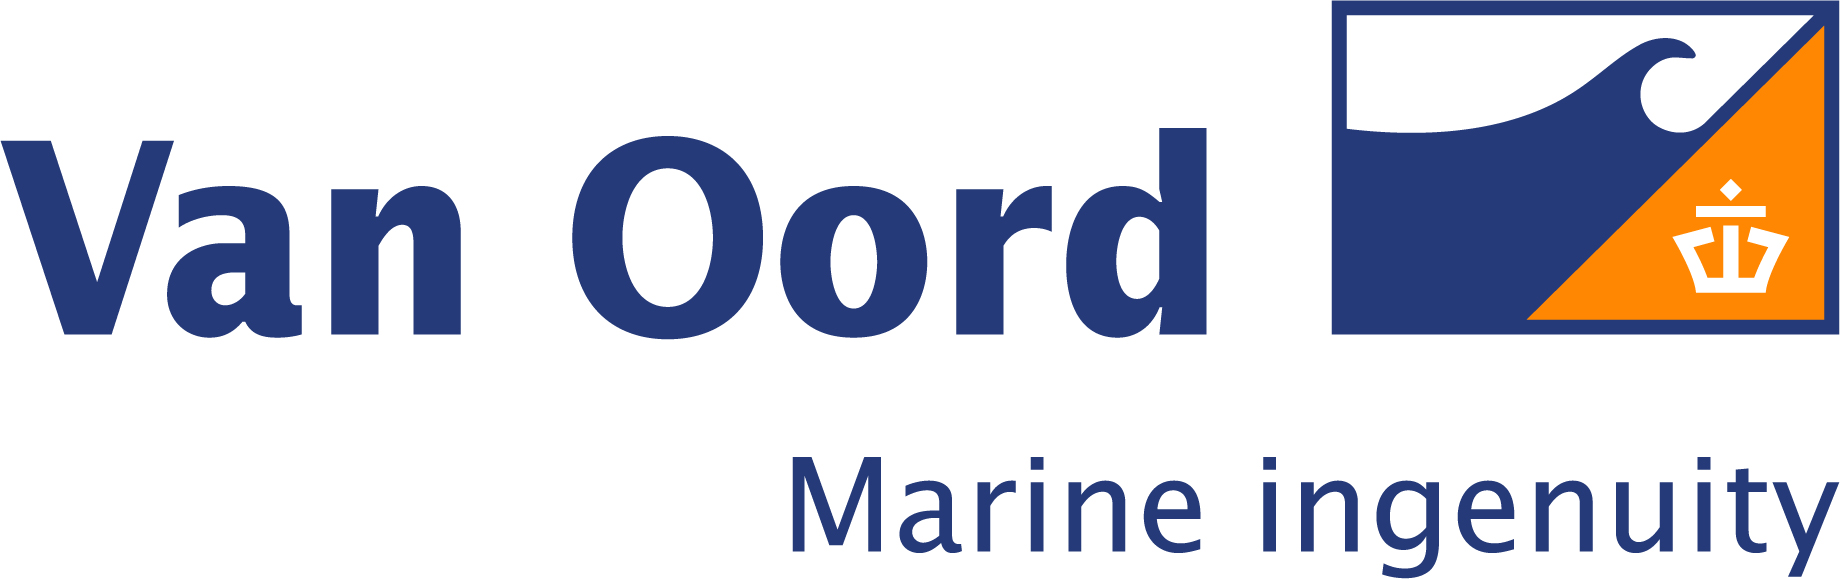 Van Ooord logo